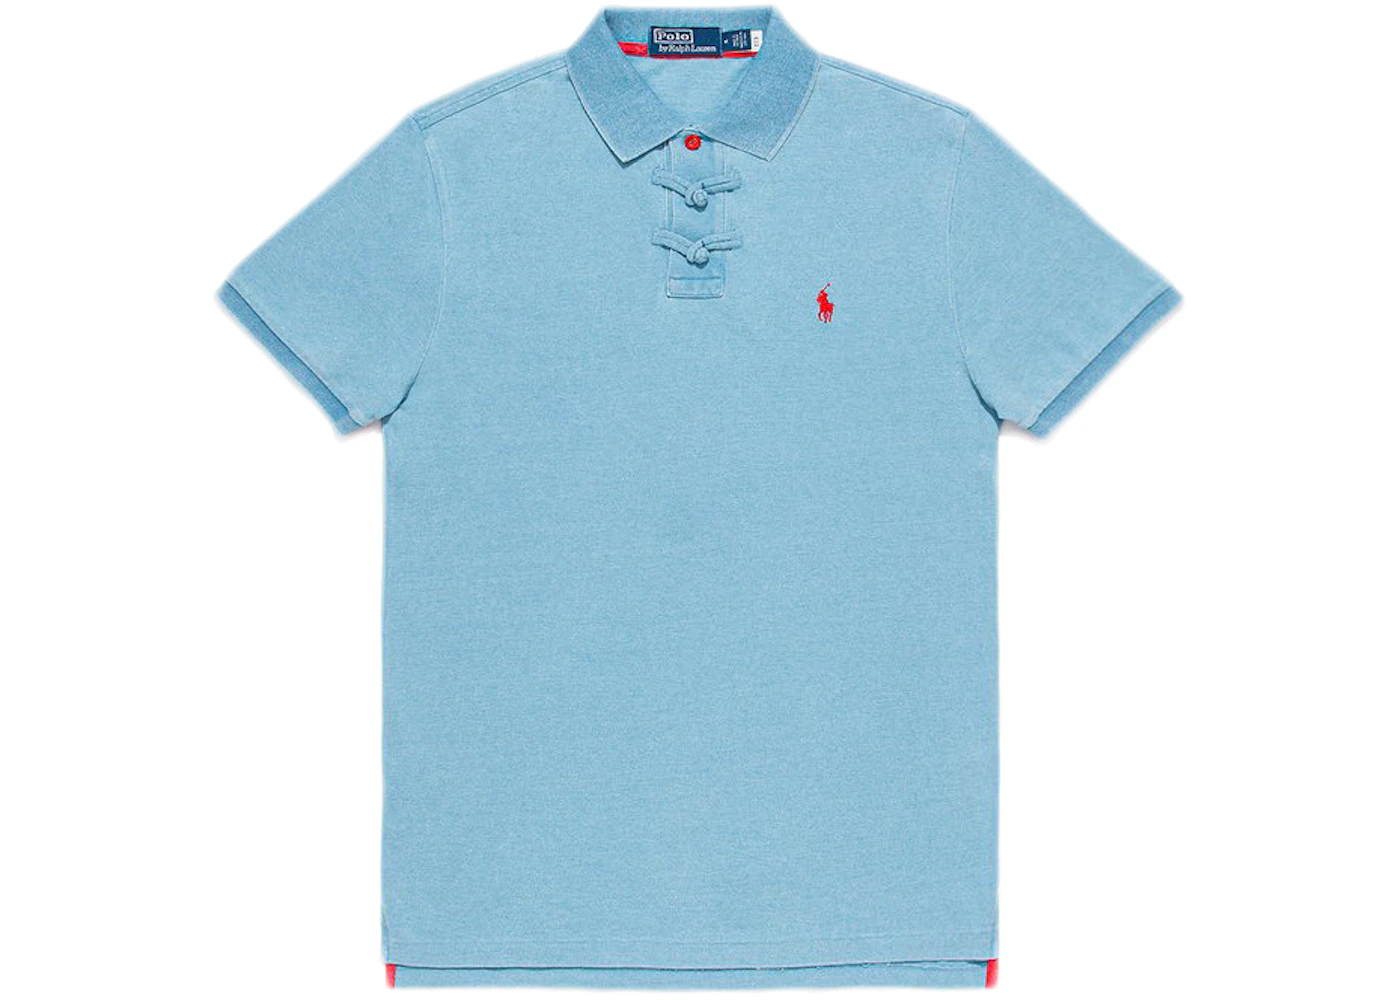 CLOT x Polo by Ralph Lauren Polo Shirt Blue Men's - SS21 - US